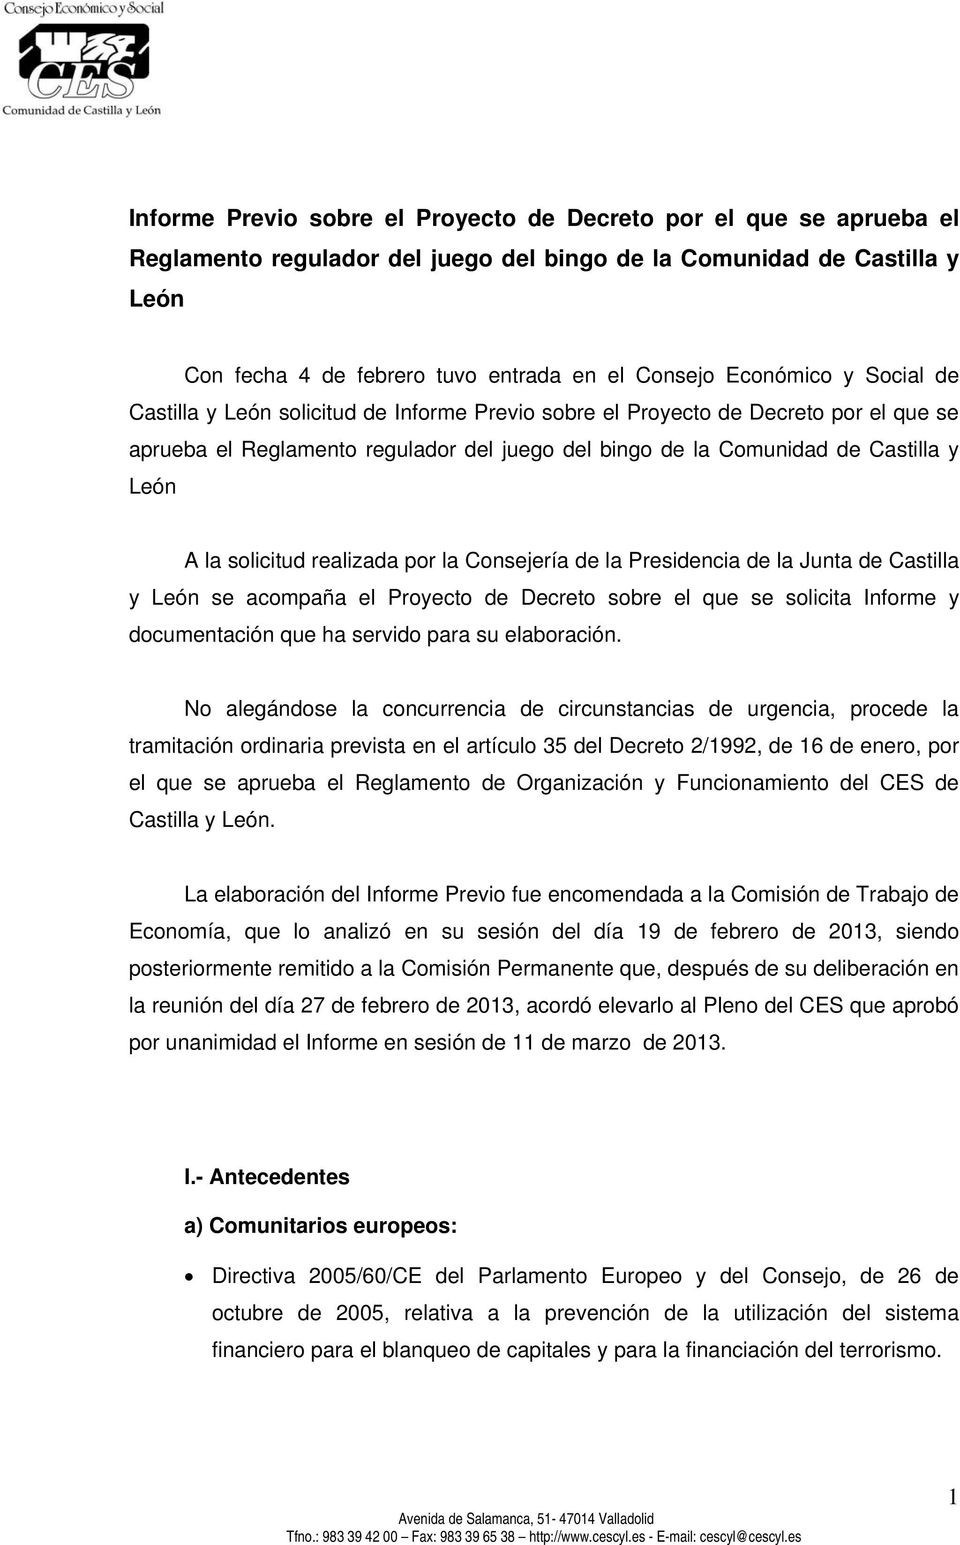 la solicitud realizada por la Consejería de la Presidencia de la Junta de Castilla y León se acompaña el Proyecto de Decreto sobre el que se solicita Informe y documentación que ha servido para su